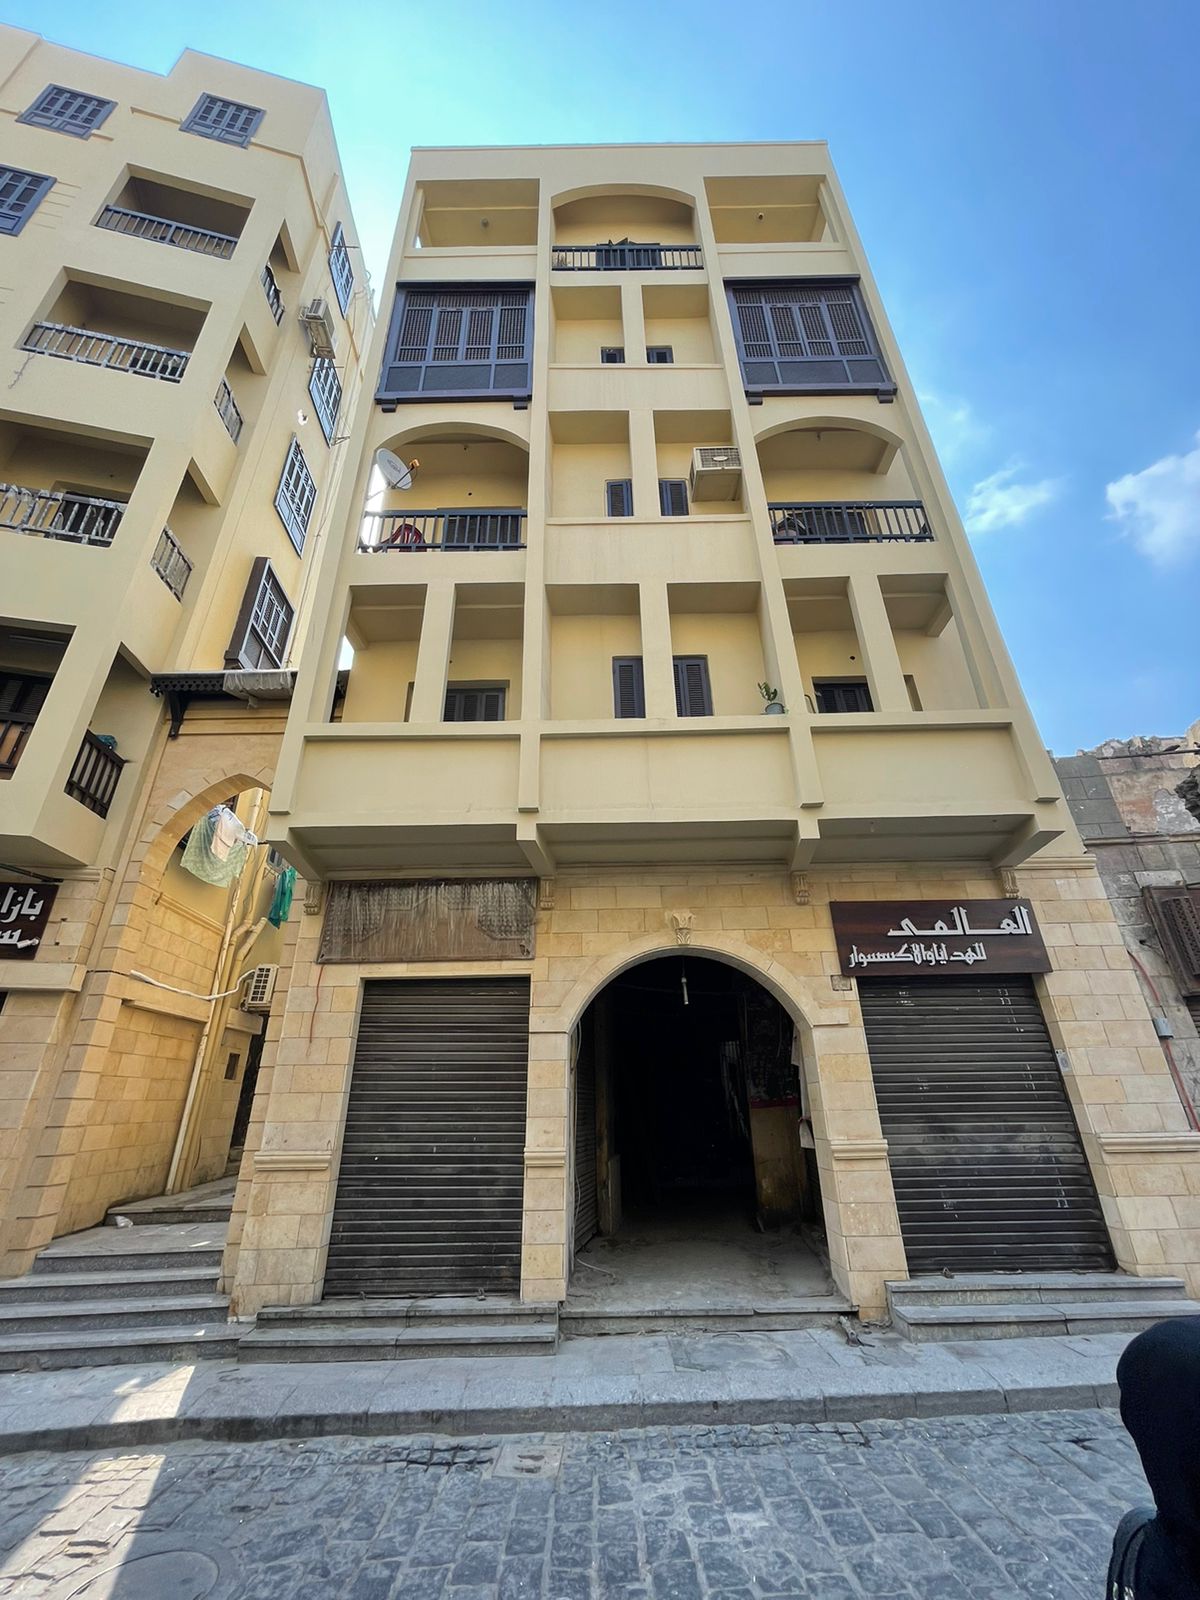  تطوير مناطق القاهرة التاريخية